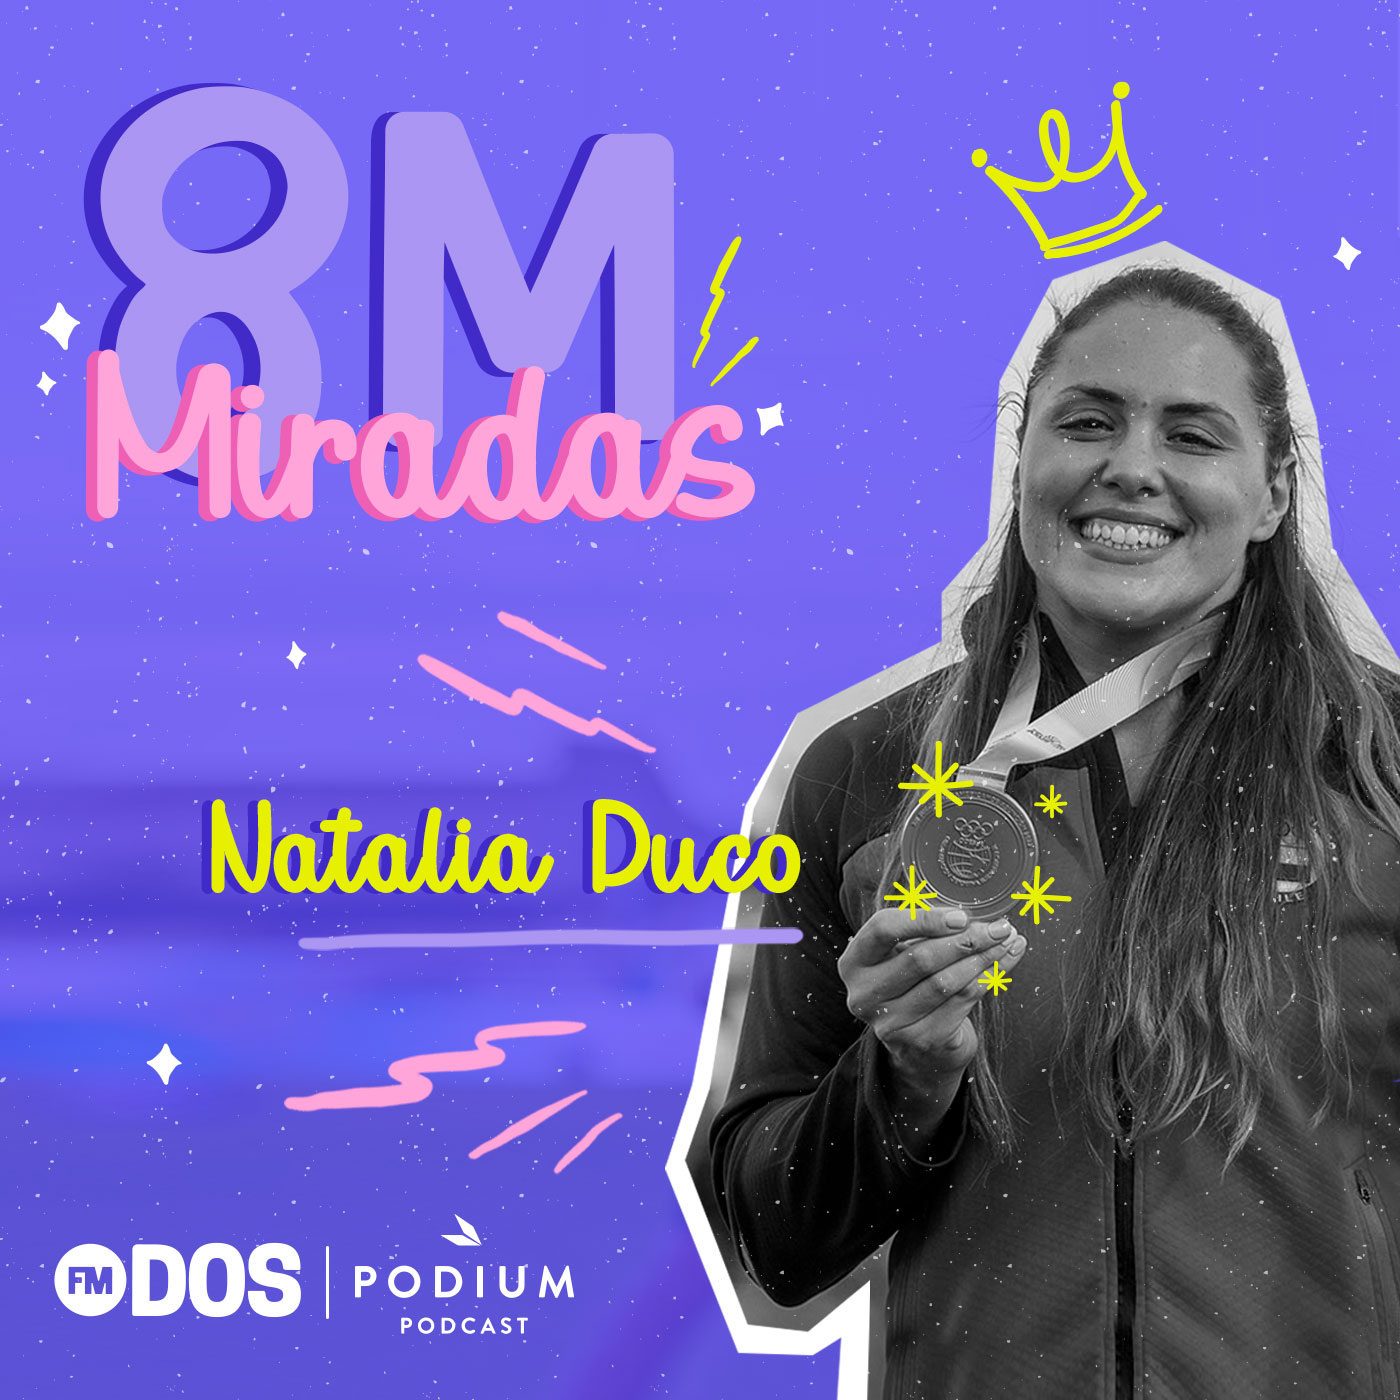 8M MIRADAS: NATALIA DUCO